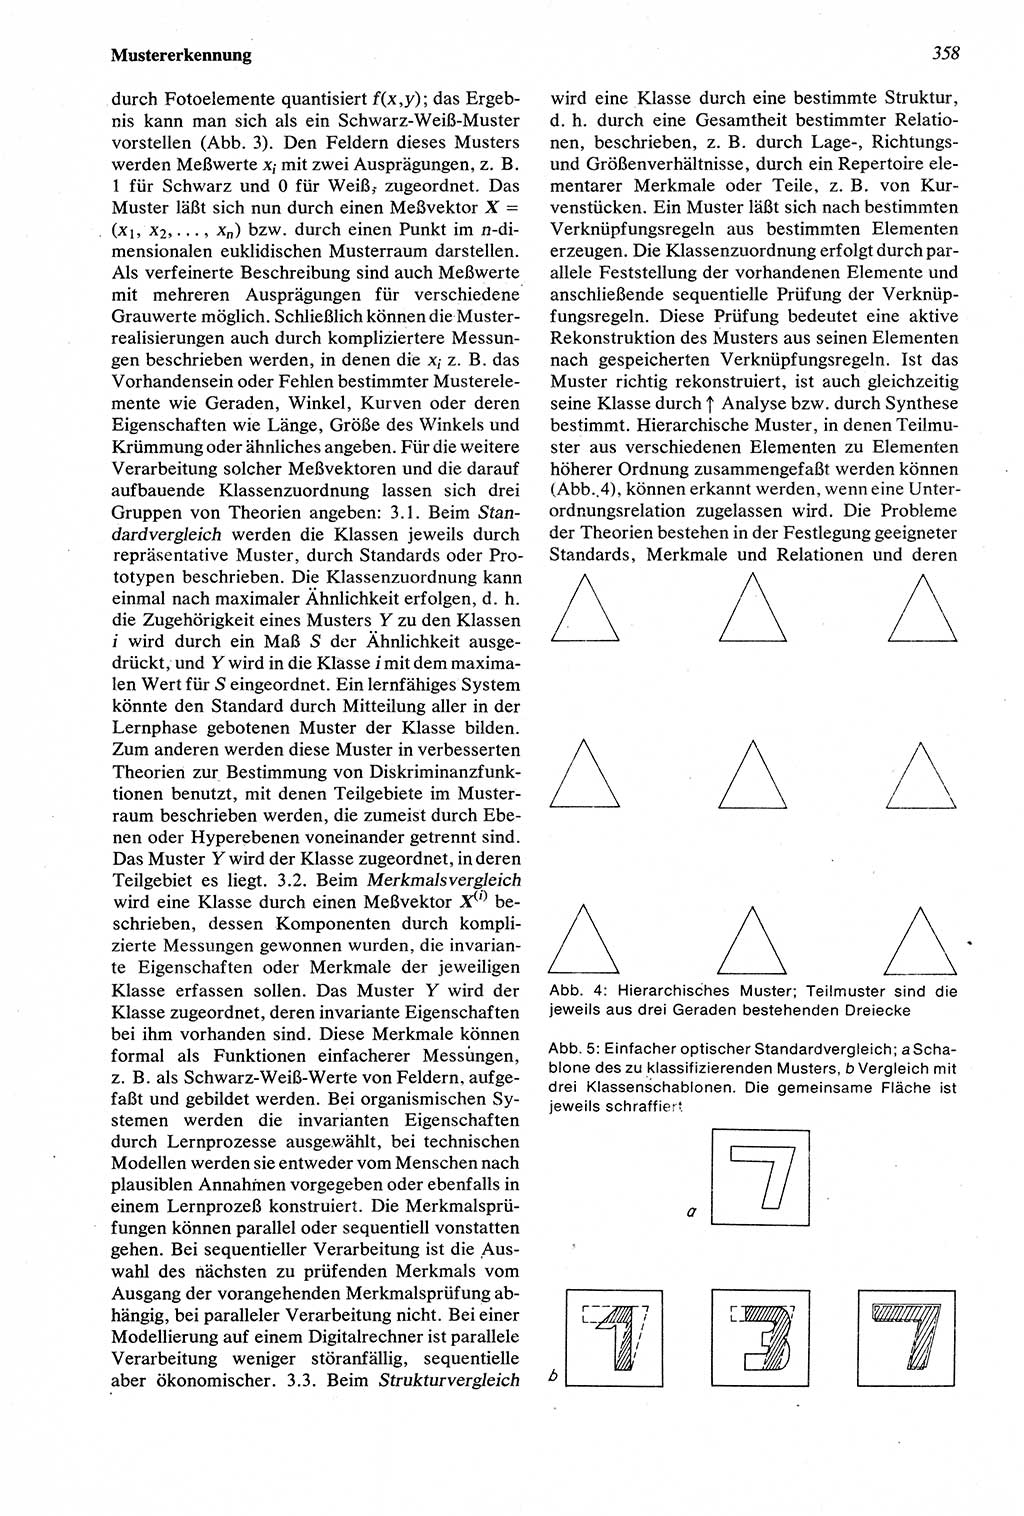 Wörterbuch der Psychologie [Deutsche Demokratische Republik (DDR)] 1976, Seite 358 (Wb. Psych. DDR 1976, S. 358)